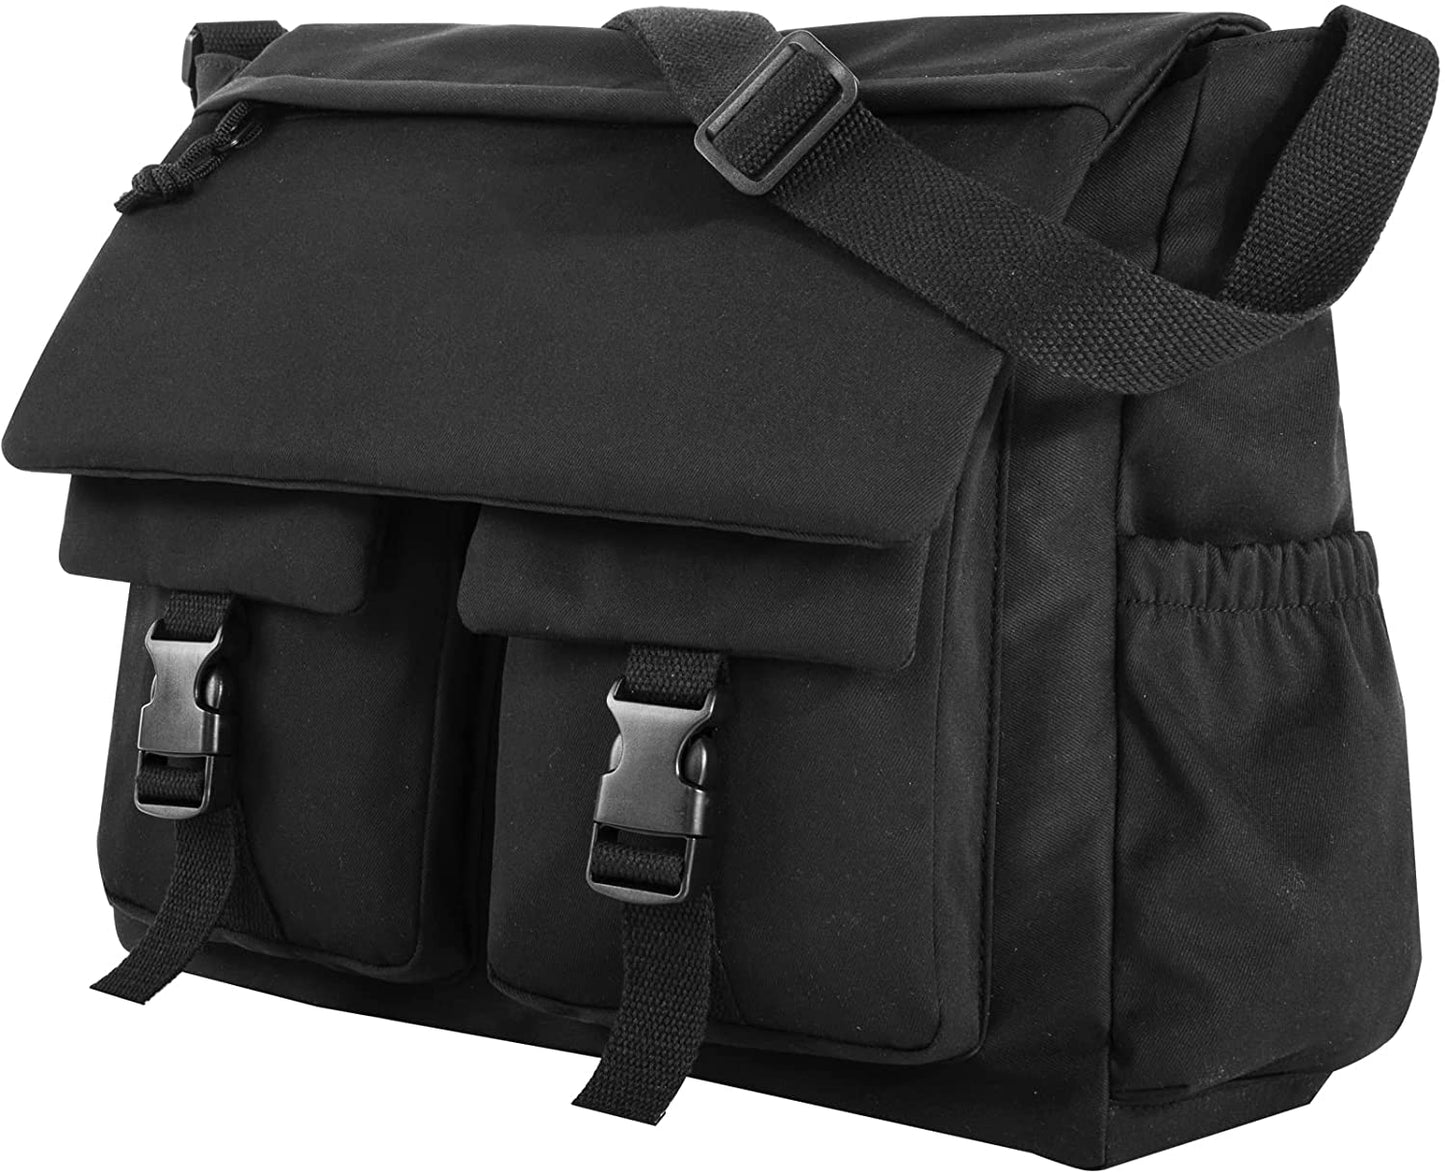 Lovvento Canvas Messenger Bag Crossbody Bag for School 15.6 Inch Laptop Bag Waterproof Shoulder Bag Lightweight